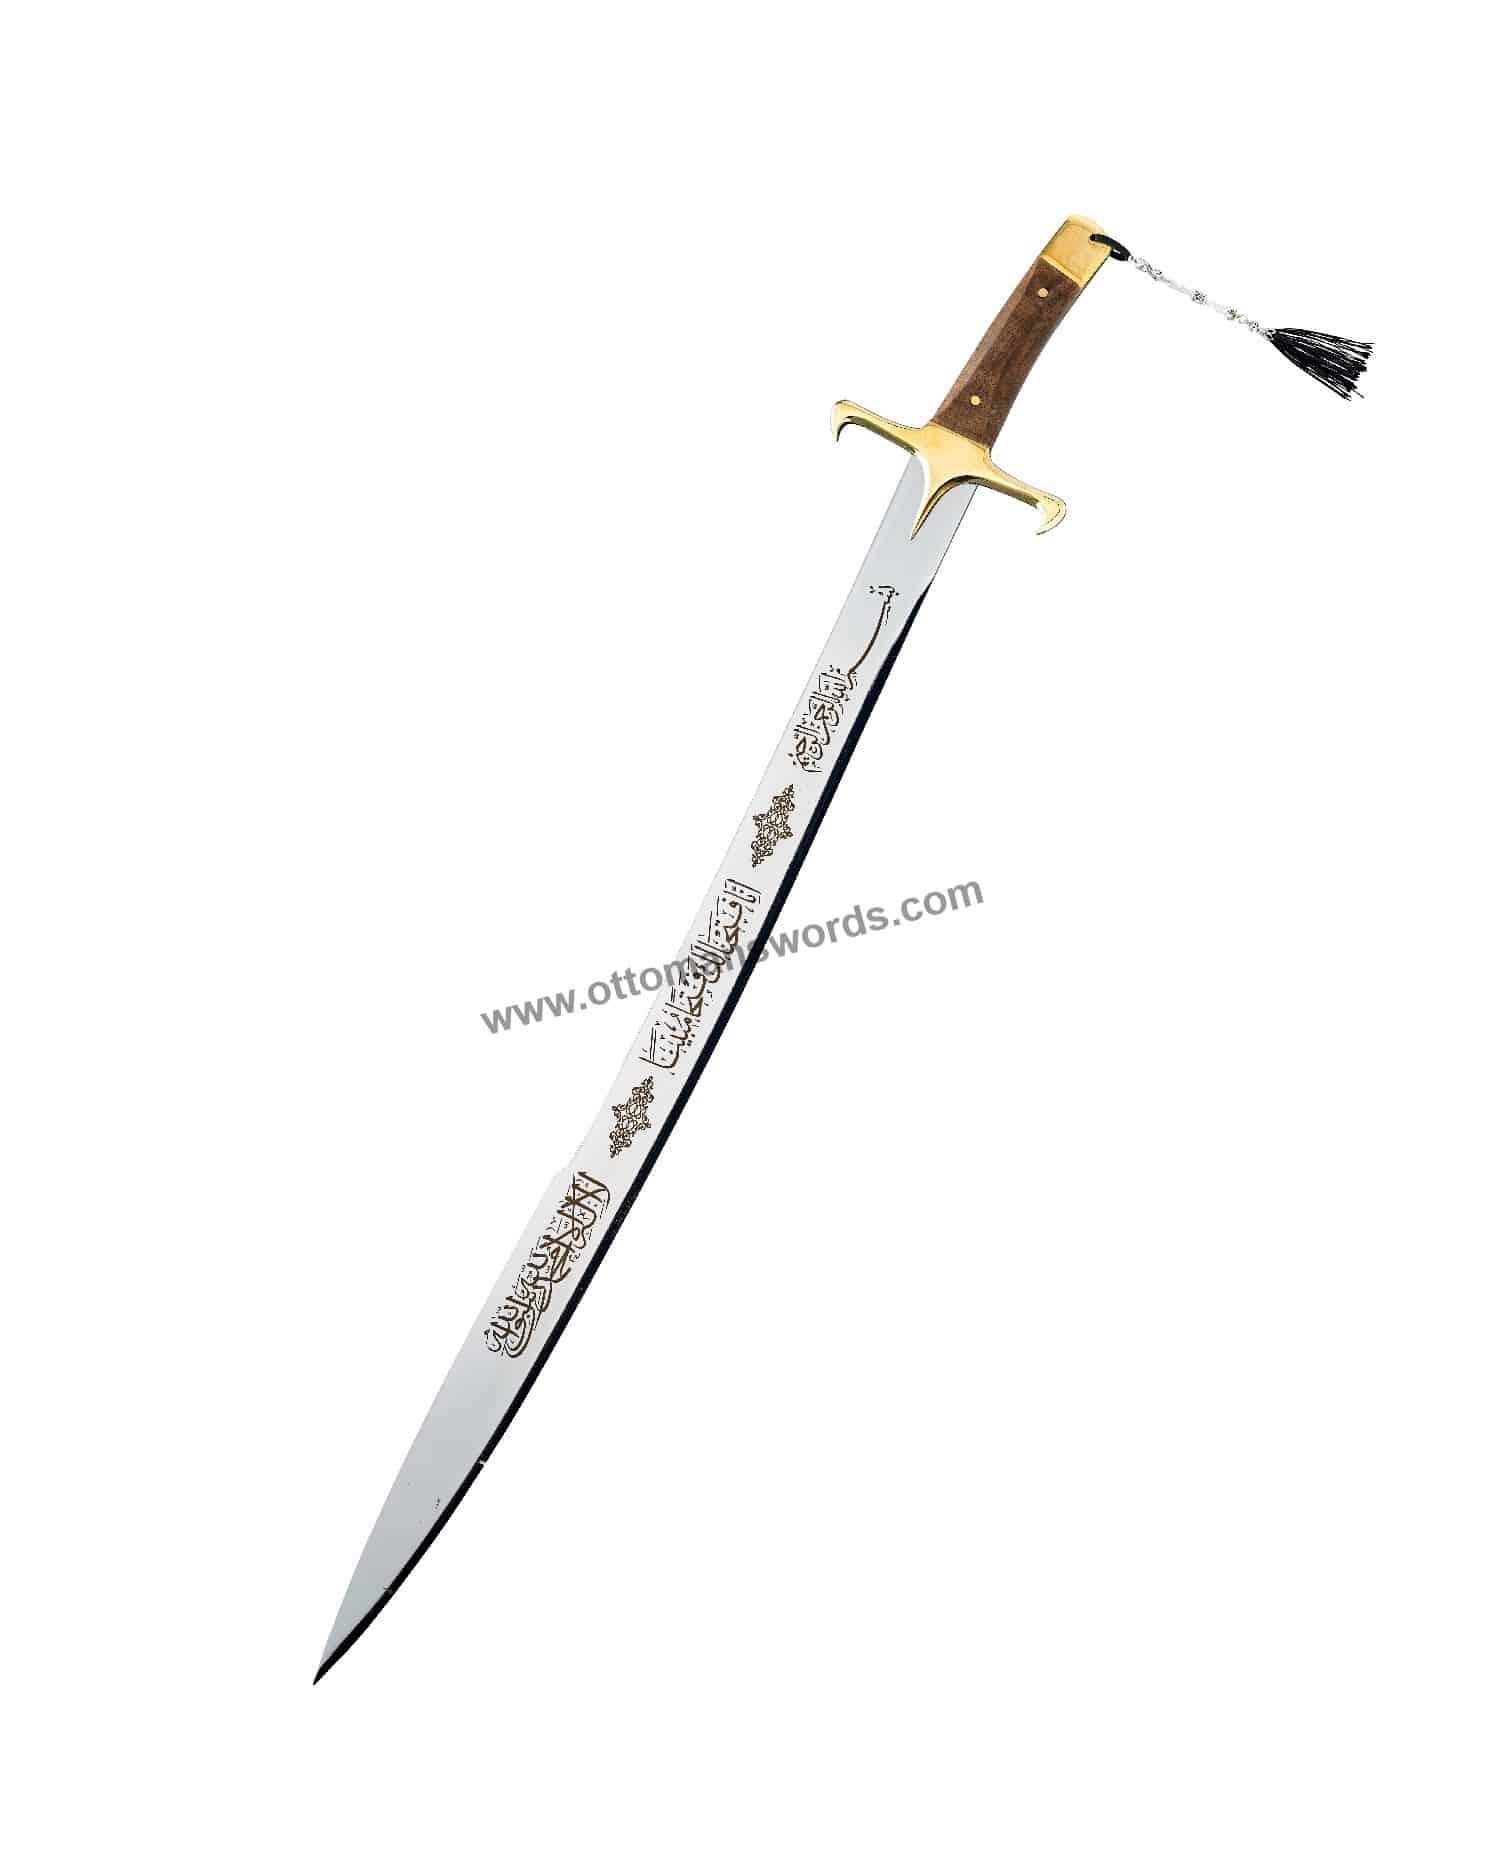 kayi sword (1)